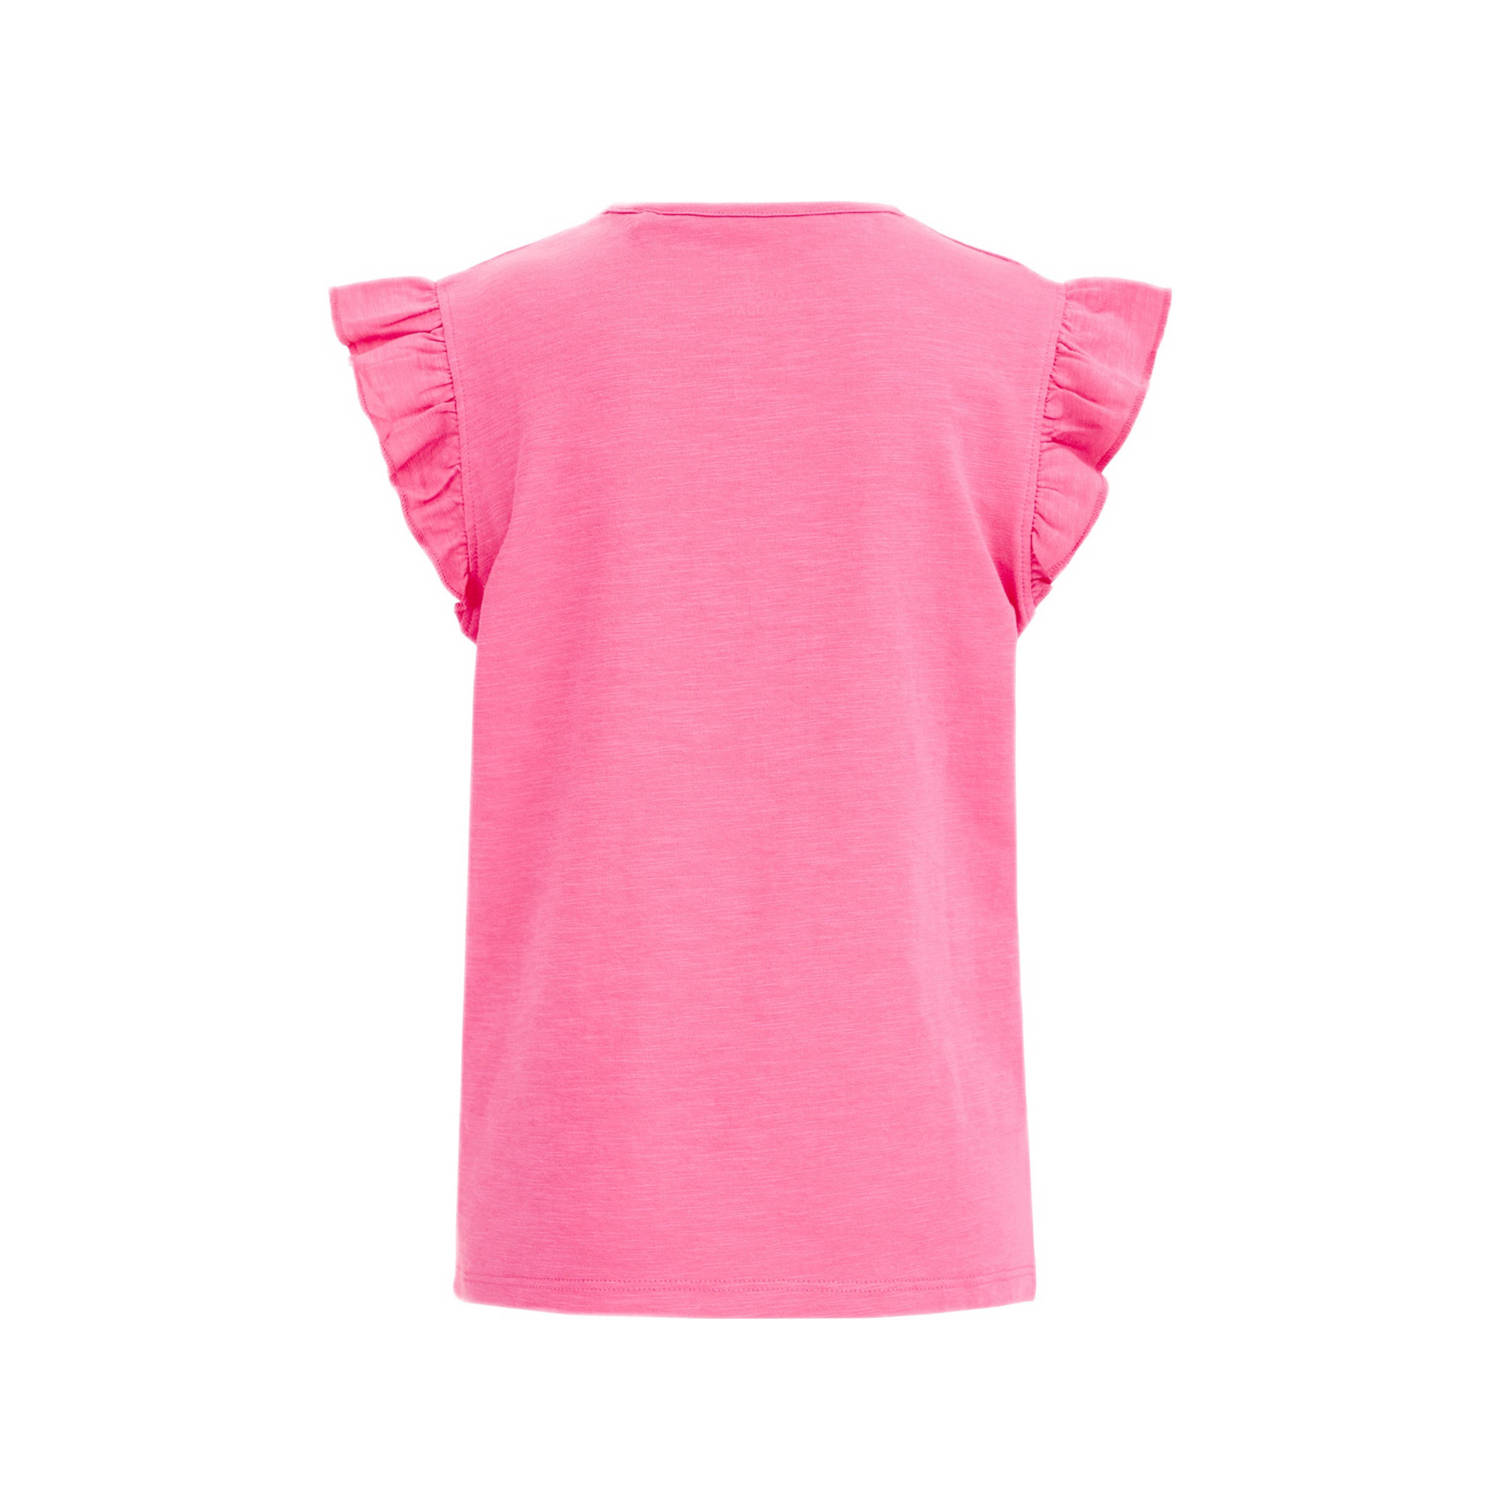 WE Fashion T-shirt roze